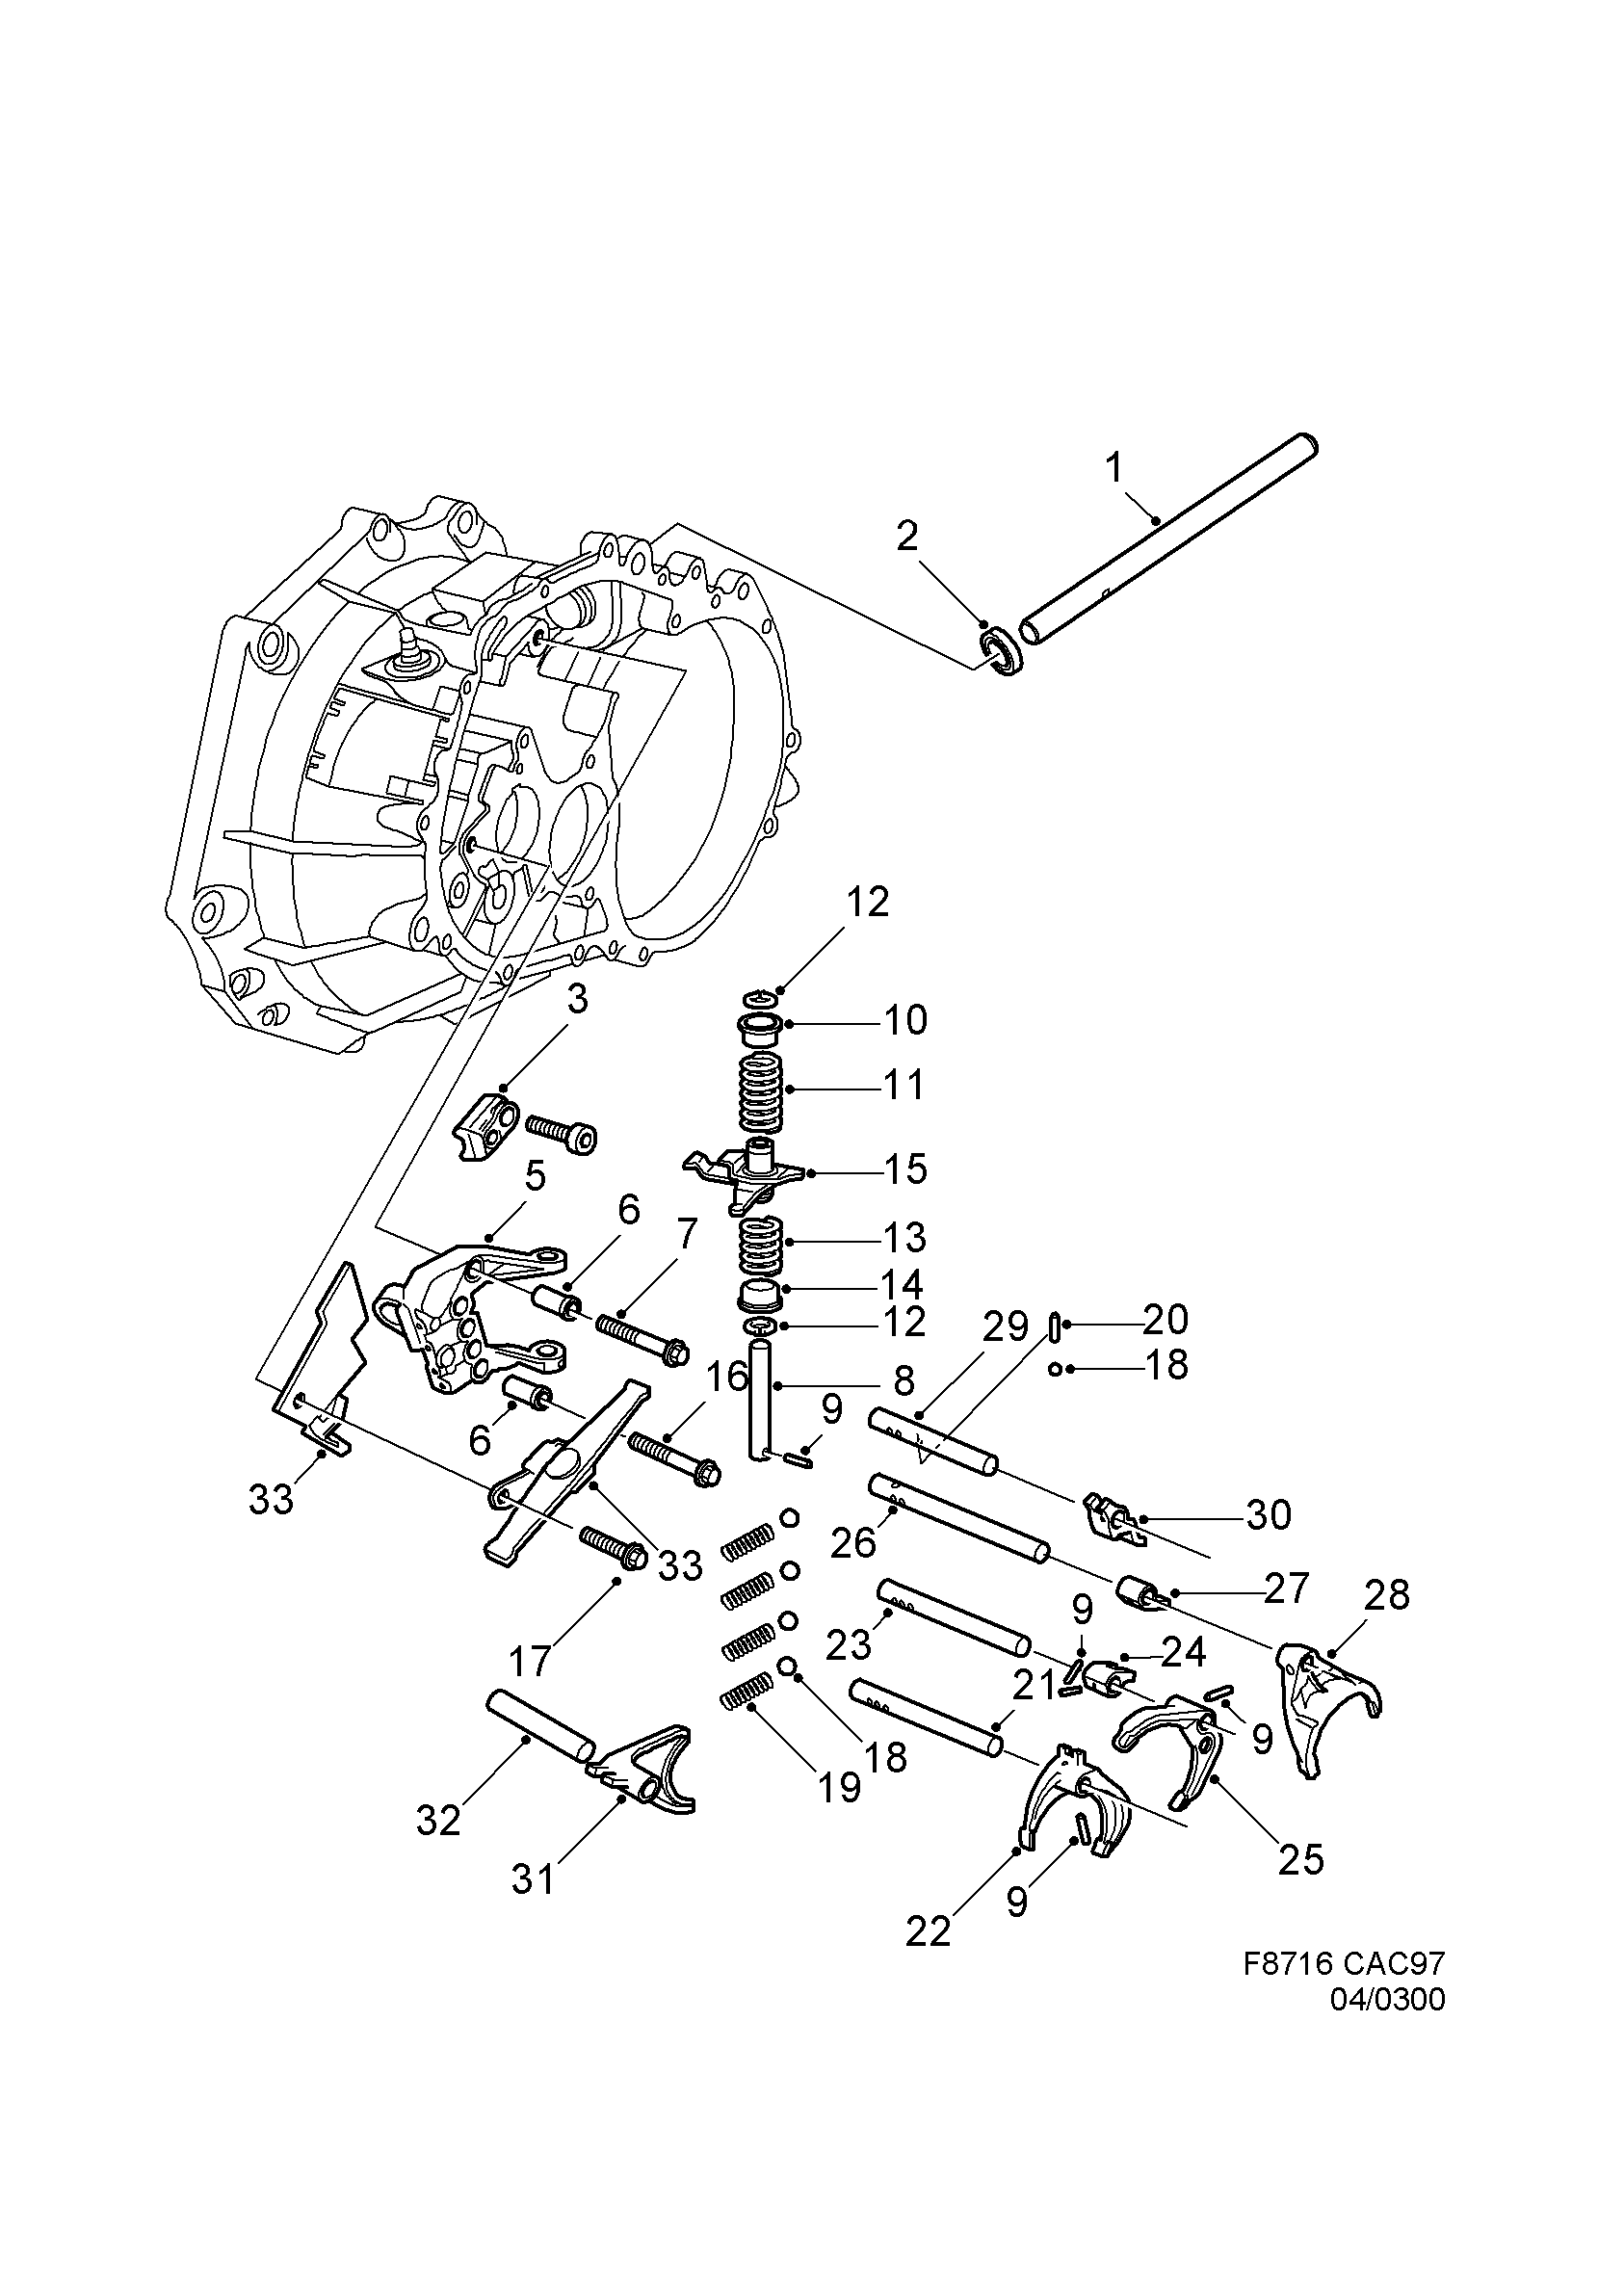 Gear selector fork - Shift rail, (1998-2010) , M